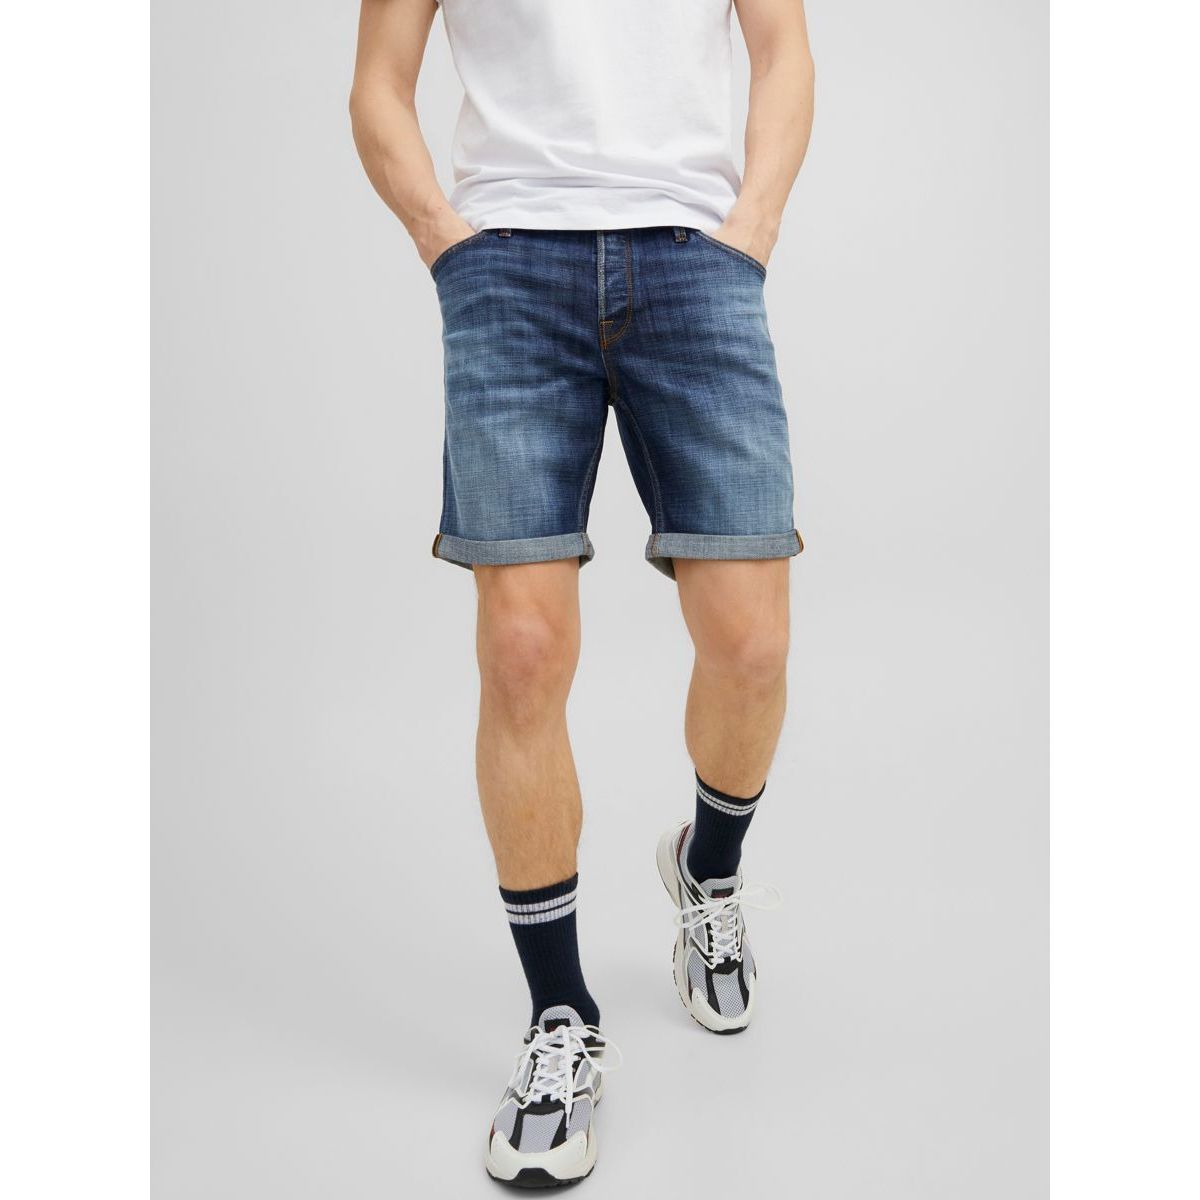 Rick fox shorts ge 324 sn Jack & Jones pour homme en coloris Bleu Homme Vêtements Shorts 58 % de réduction 